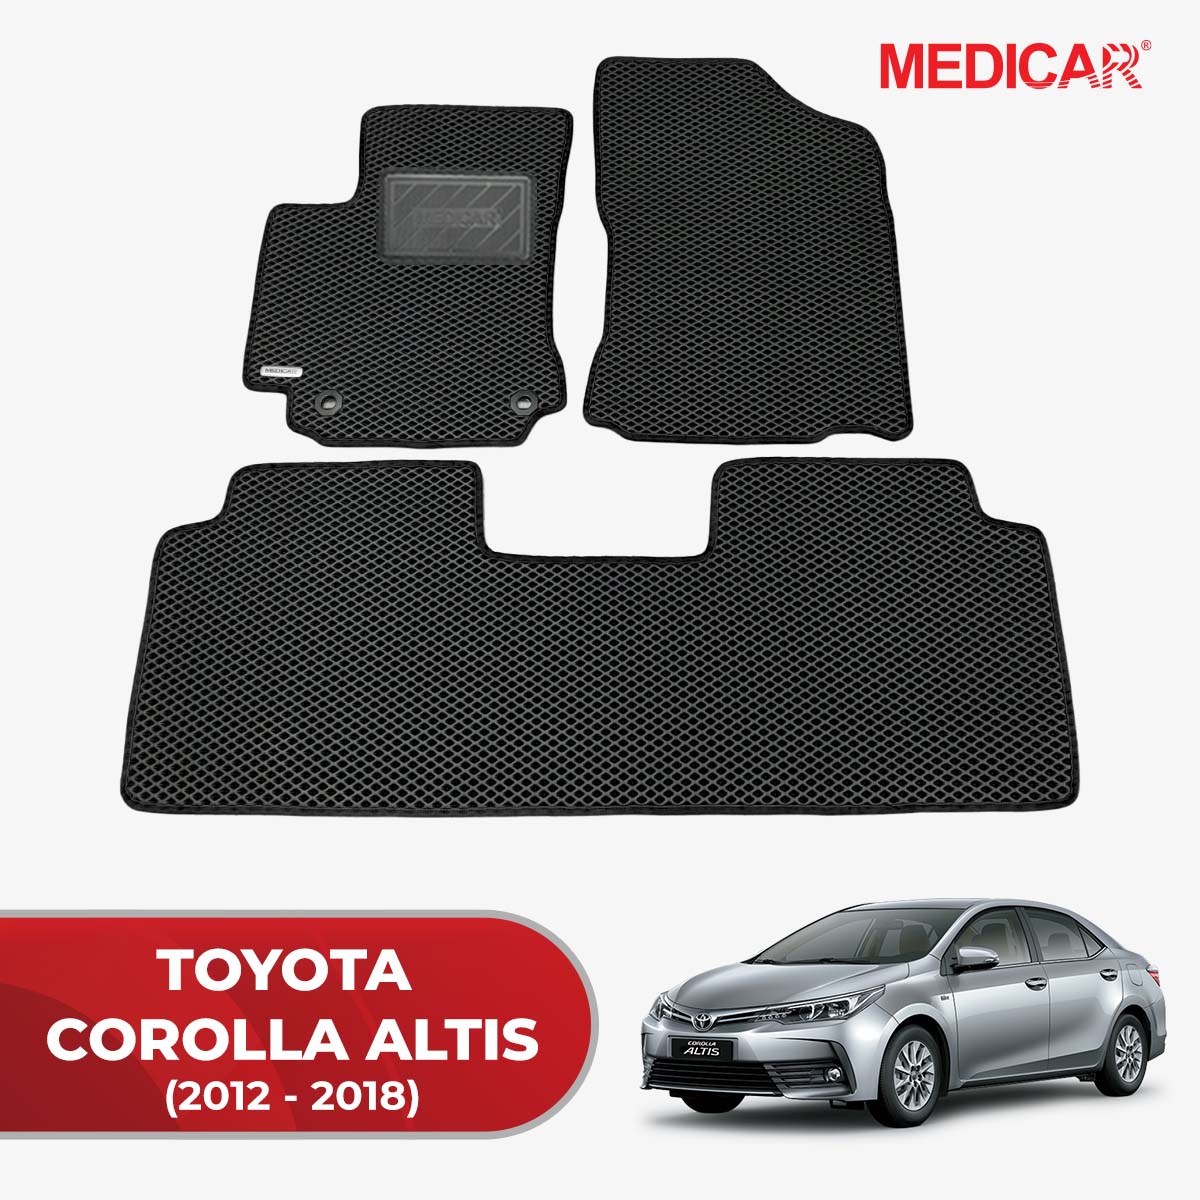 Thảm lót sàn ô tô Medicar xe Toyota Corolla Altis- chống nước, không mùi